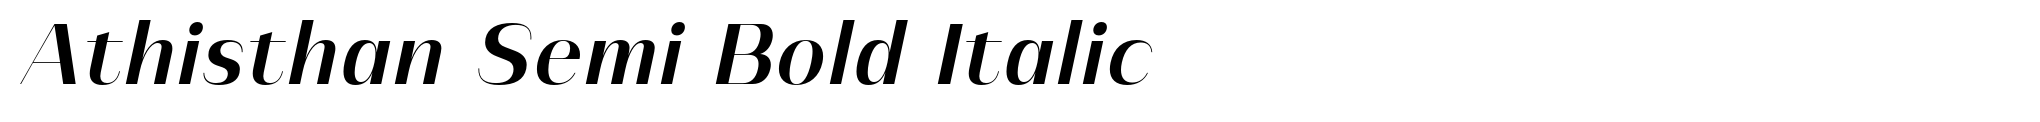 Athisthan Semi Bold Italic image